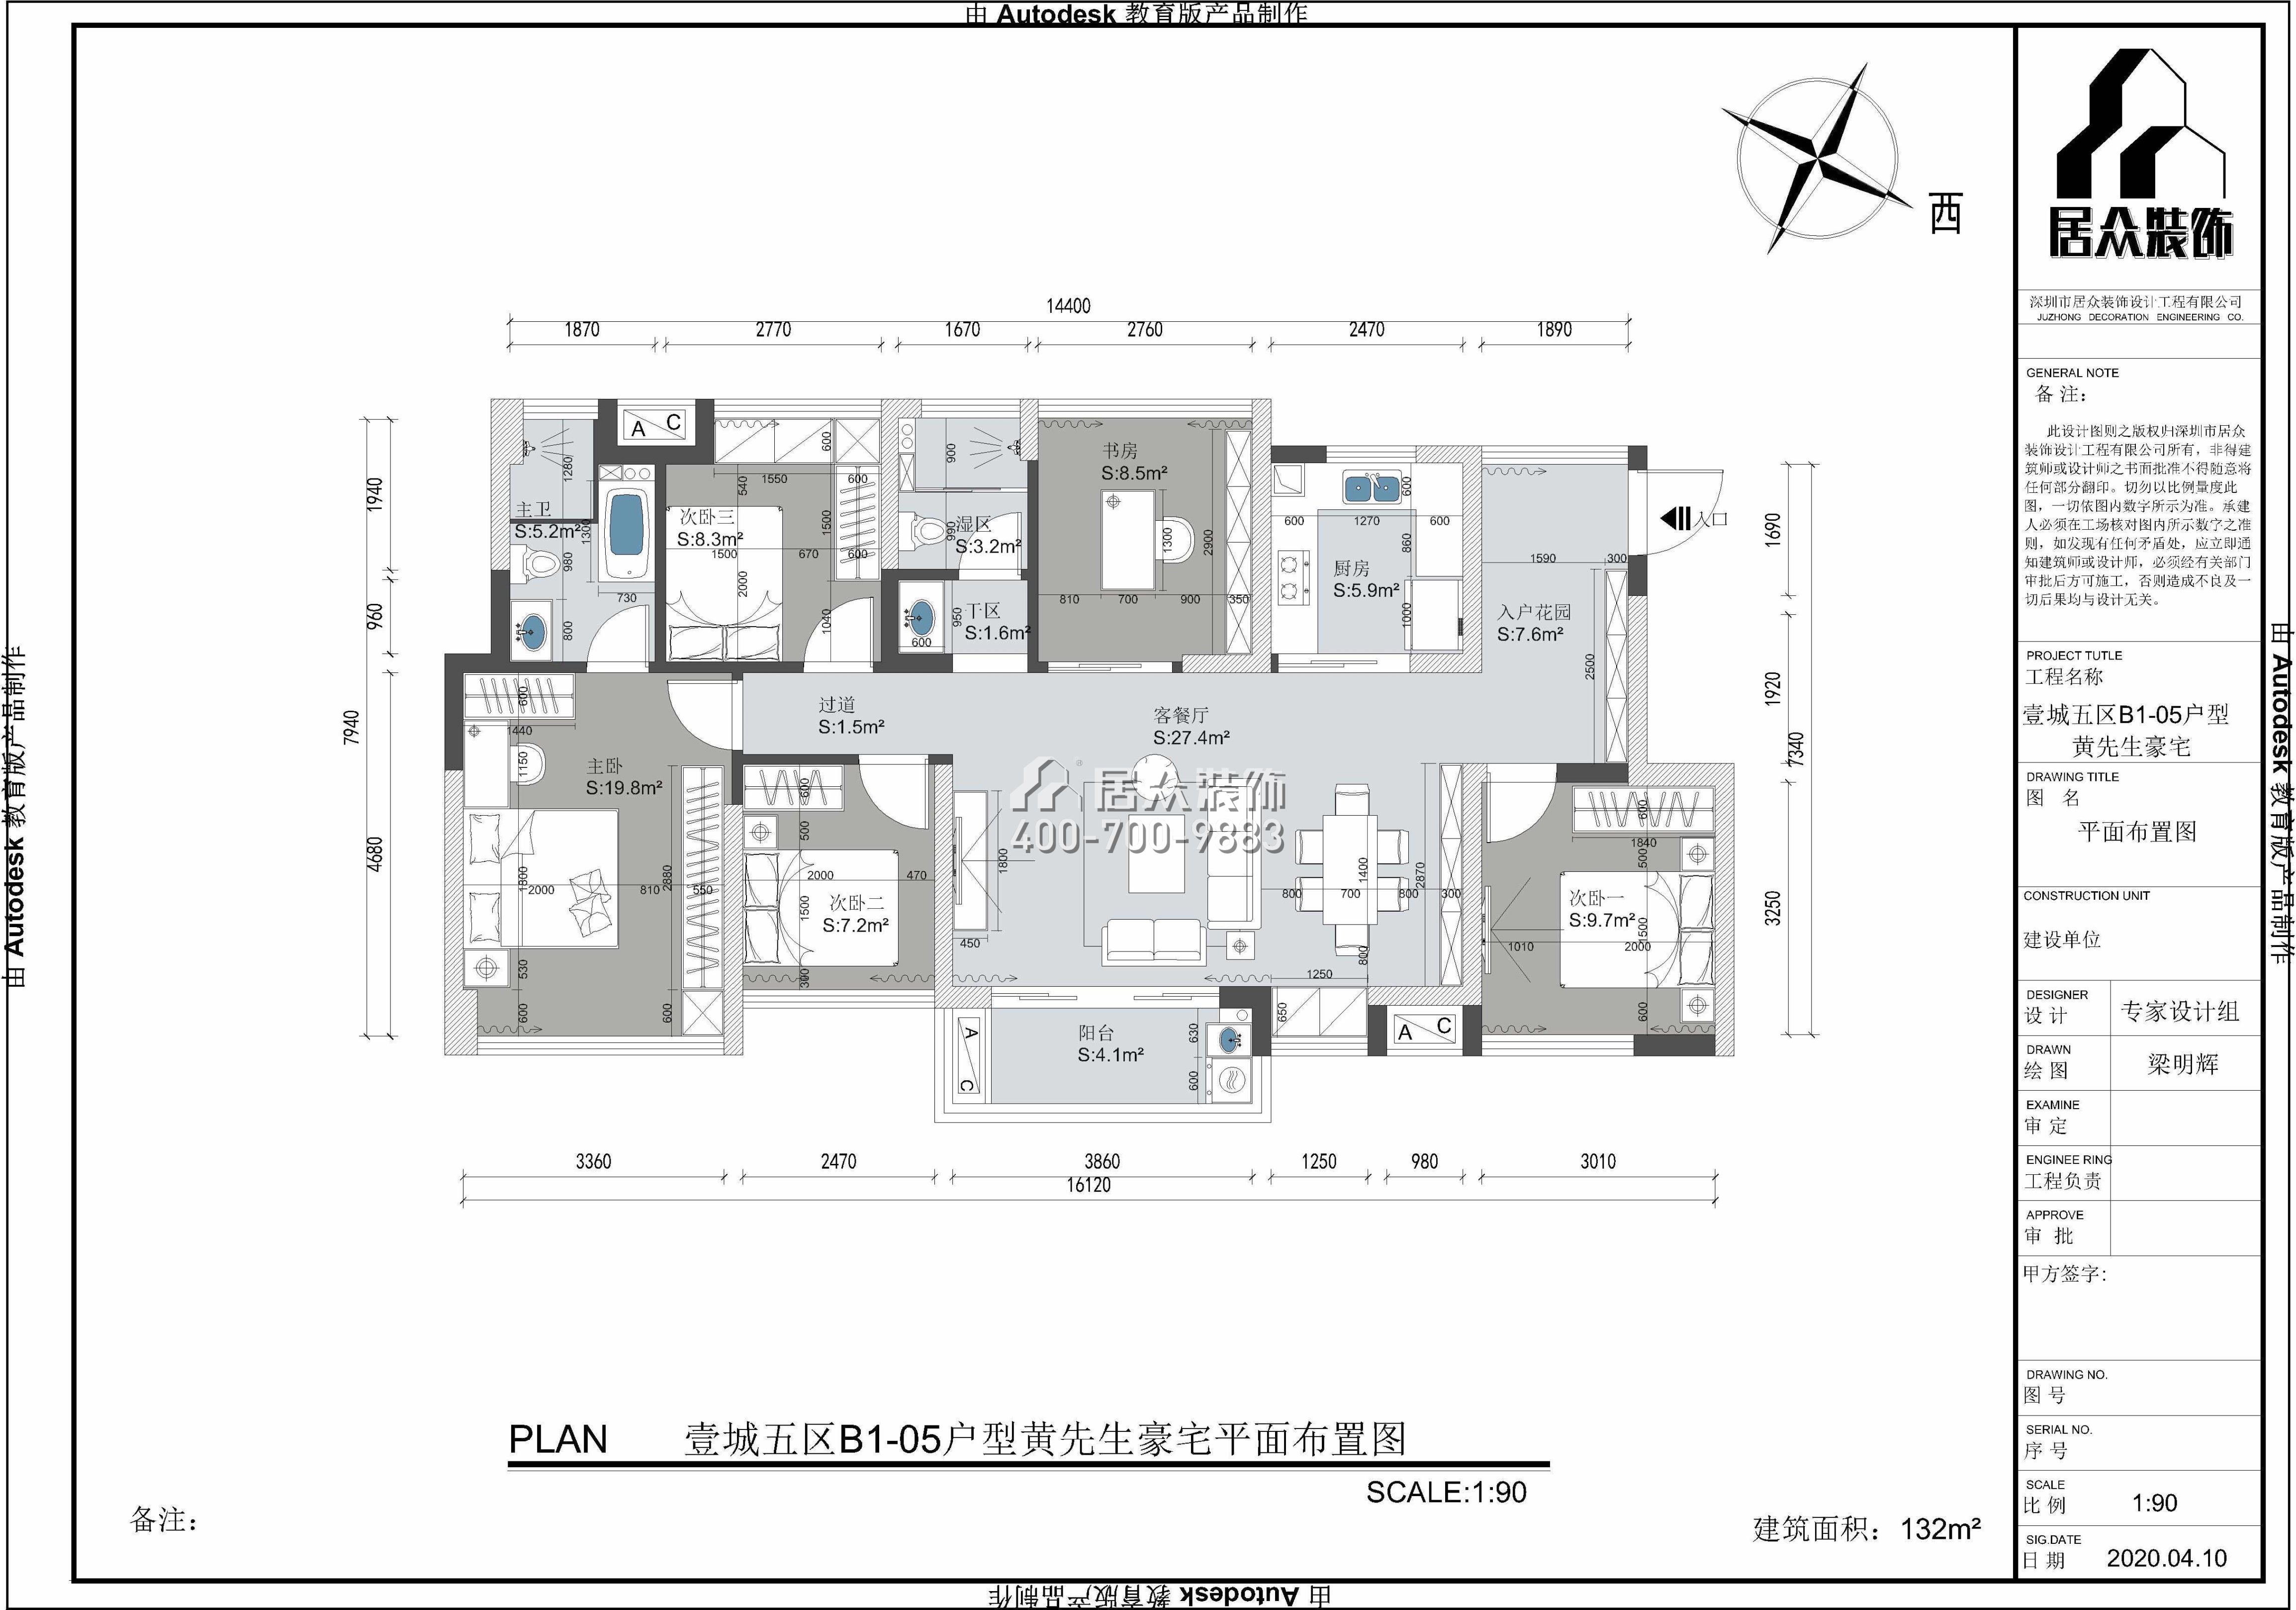 鴻榮源壹城中心132平方米現代簡約風格平層戶型戶型圖裝修效果圖